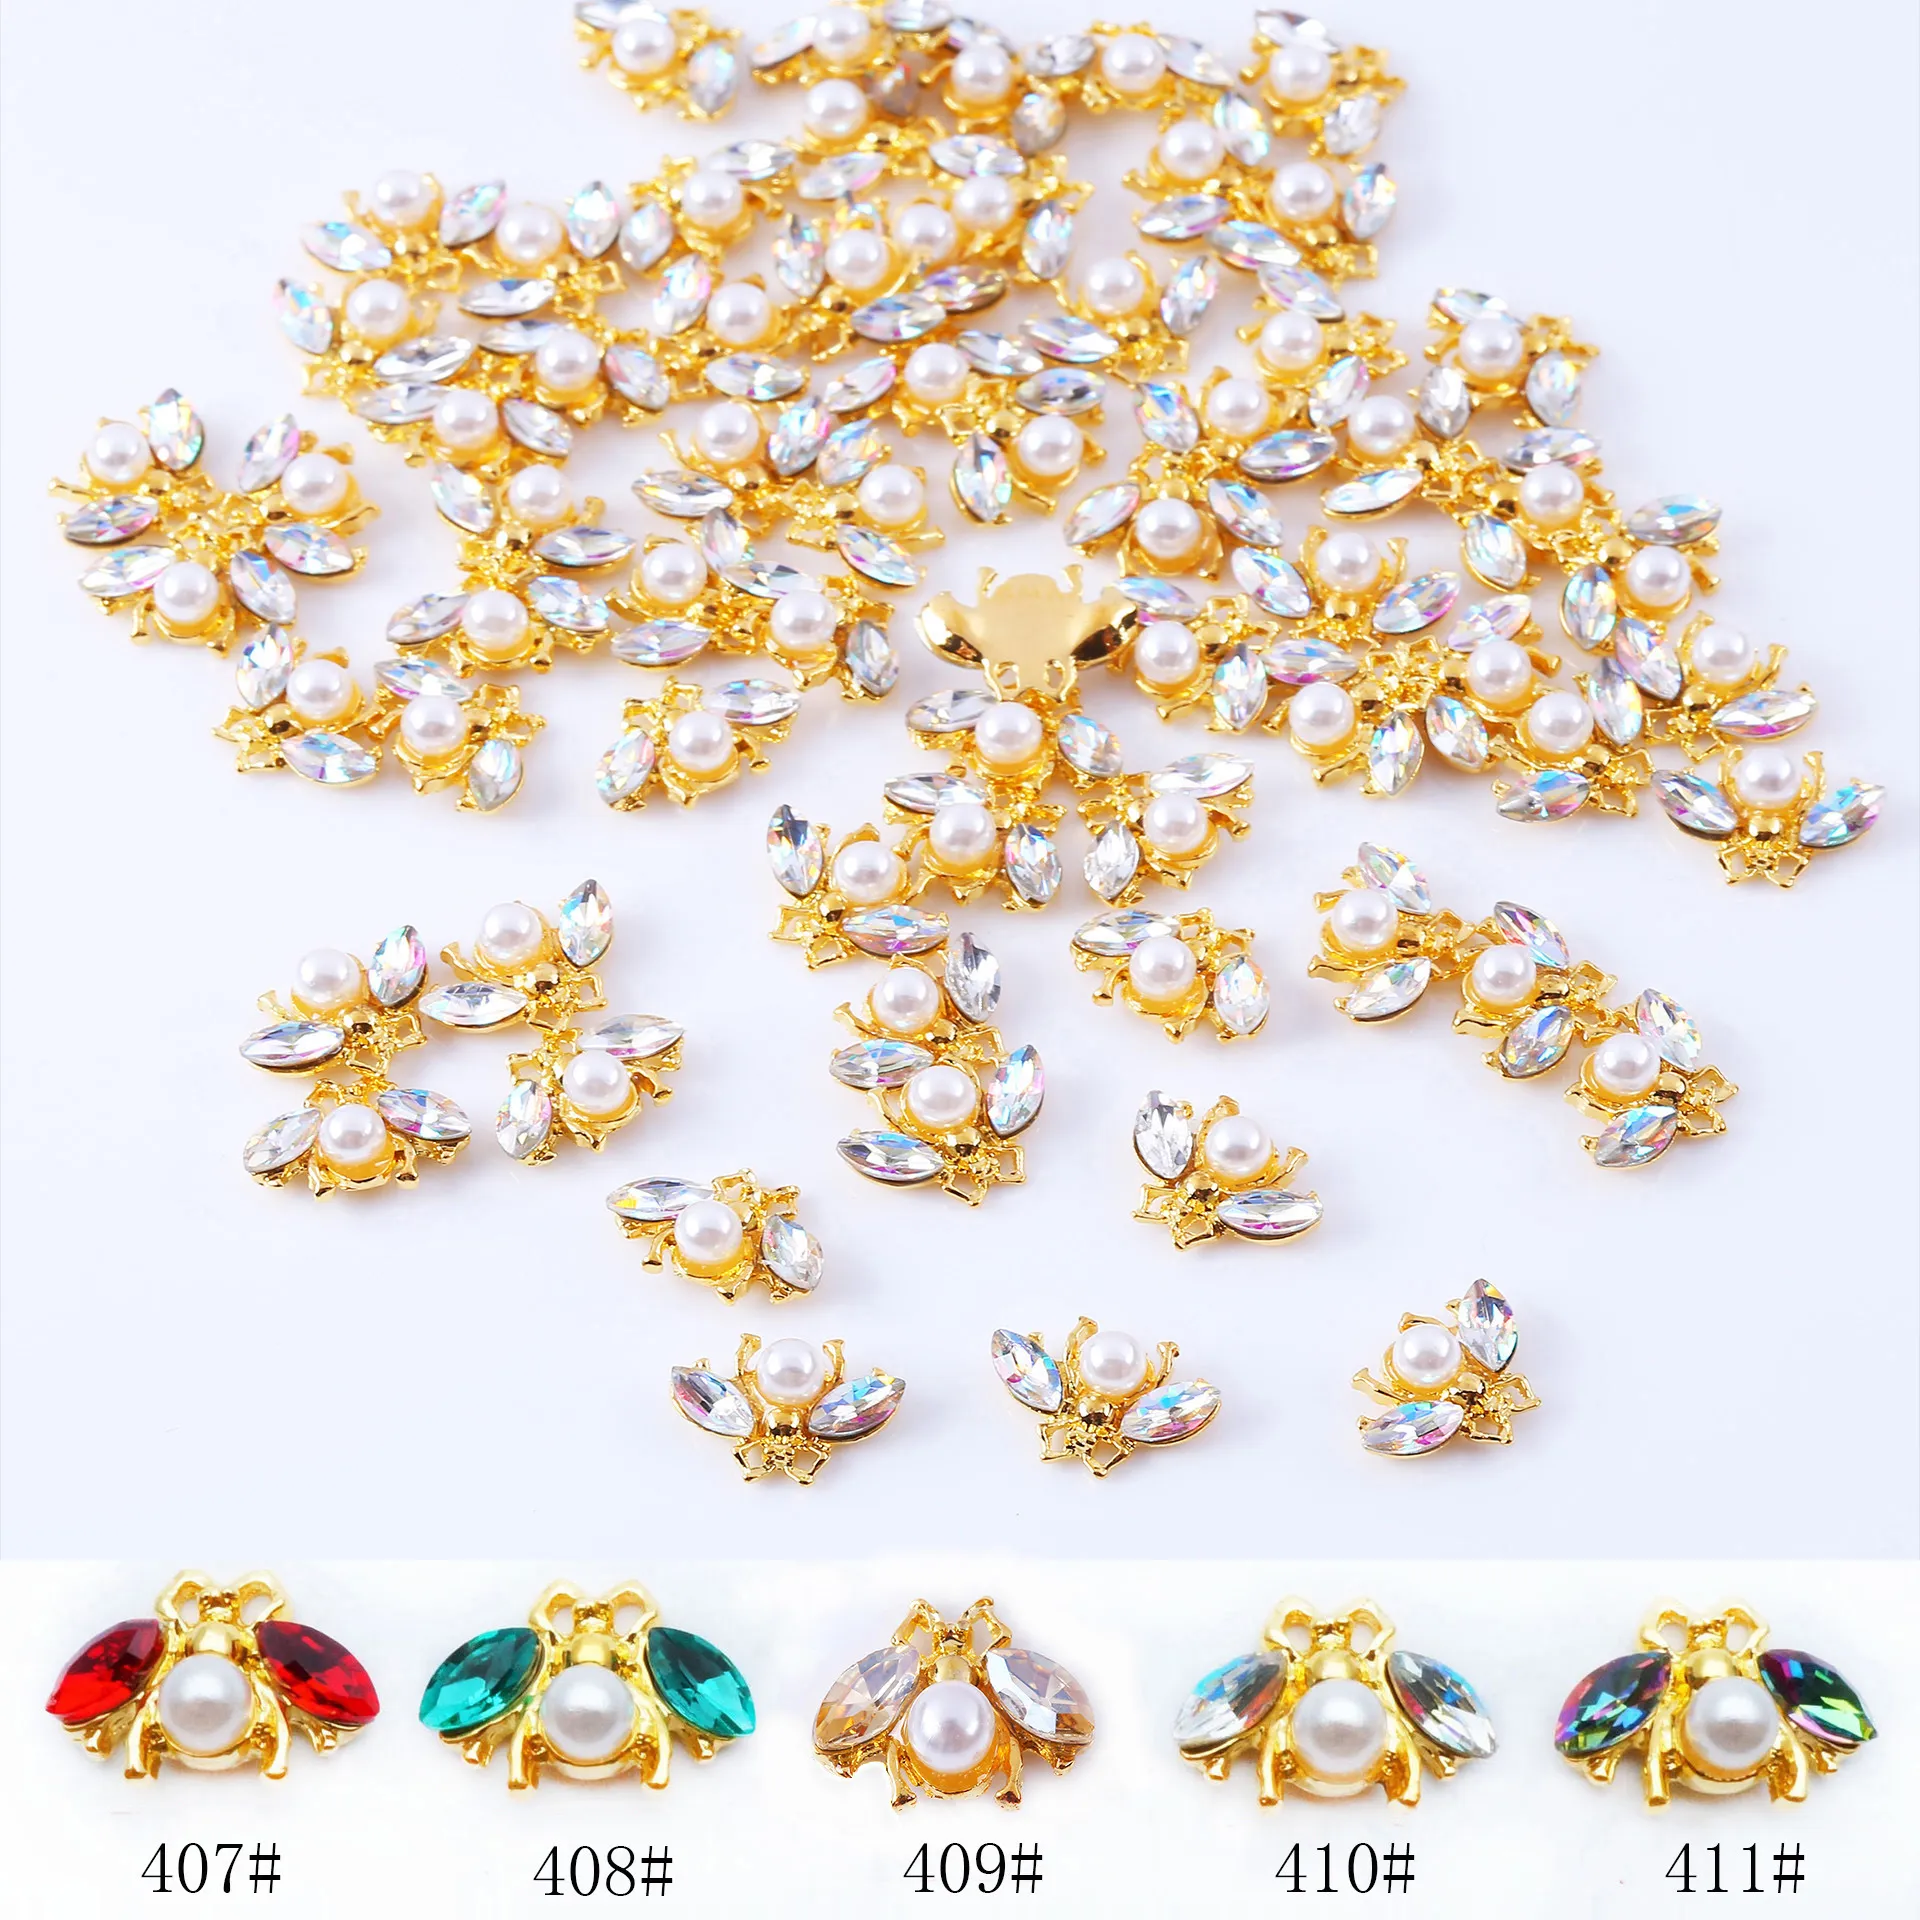 10 sztuk / partia Japoński 3d pszczoła Nail Art Decorations Diy Crystal Glitter Glitter Paznokcie Dżetów Studia Cute Animals Design Alloy naill Accessoires